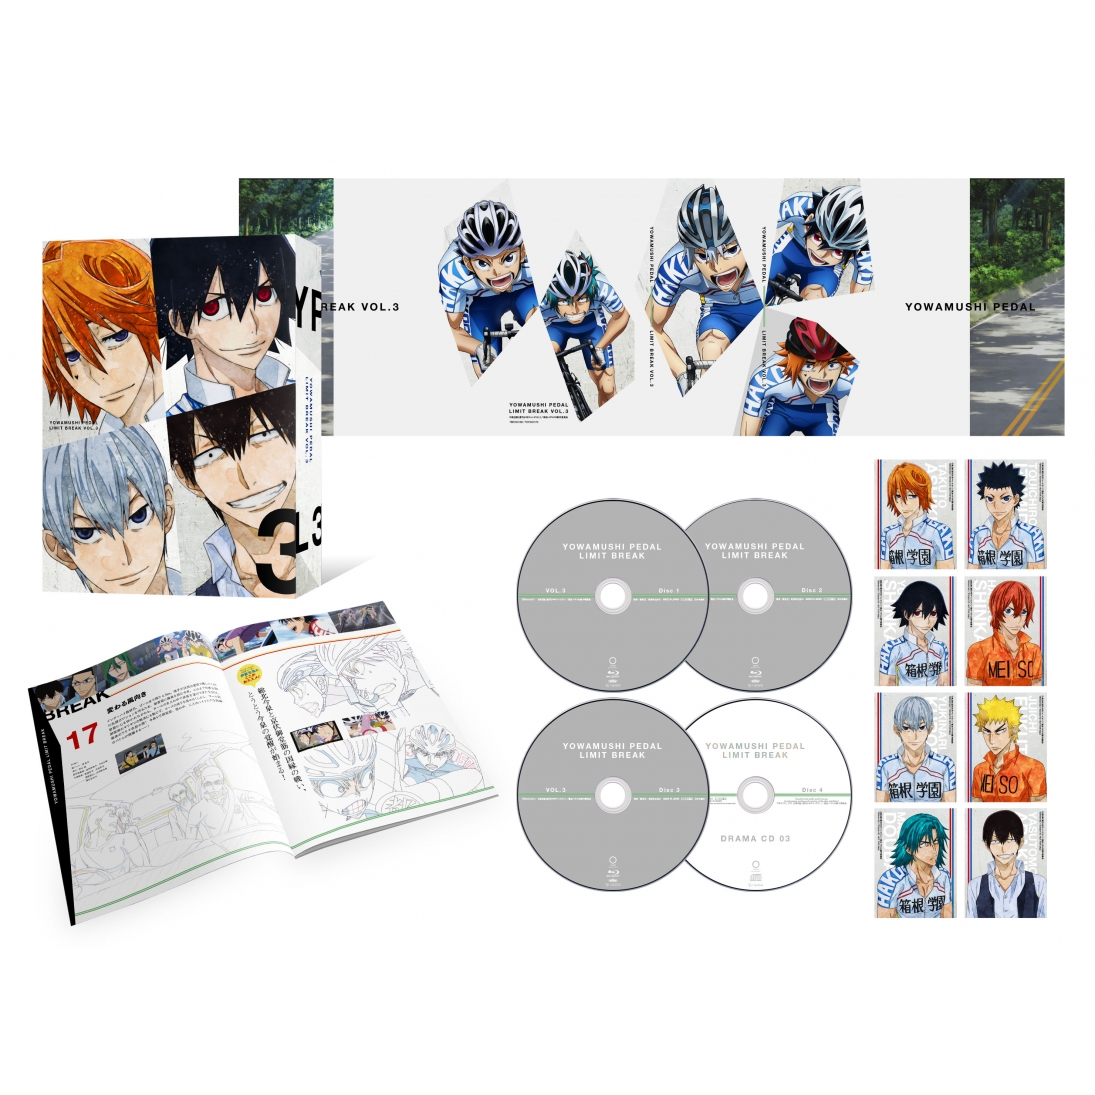 TOHO Reveals 1st 'Yowamushi Pedal: Limit Break' Anime DVD/BD